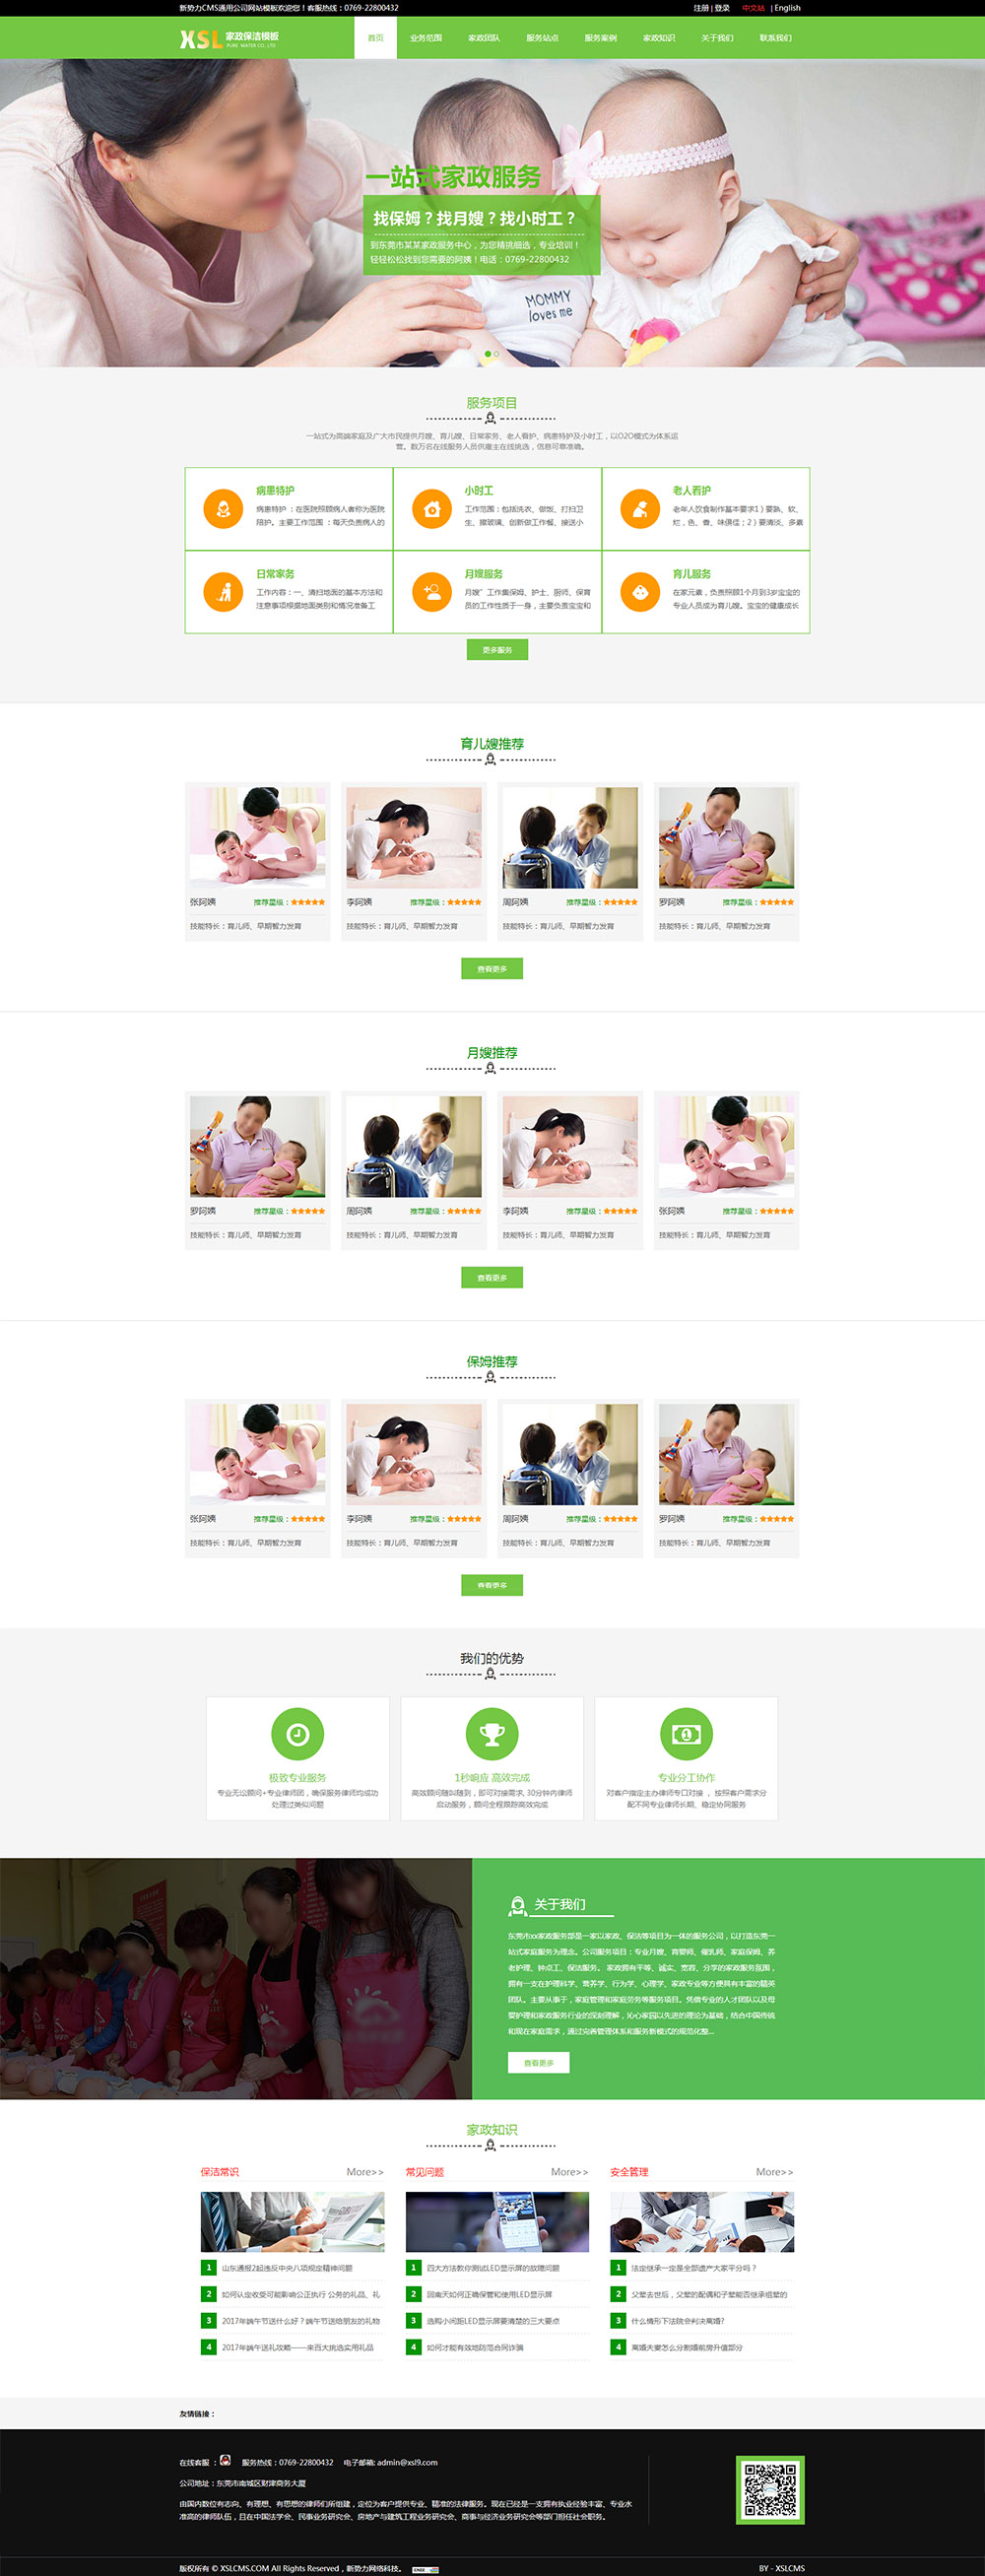 绿色响应式家政公司网站模板,自适应家政服务企业网站模板